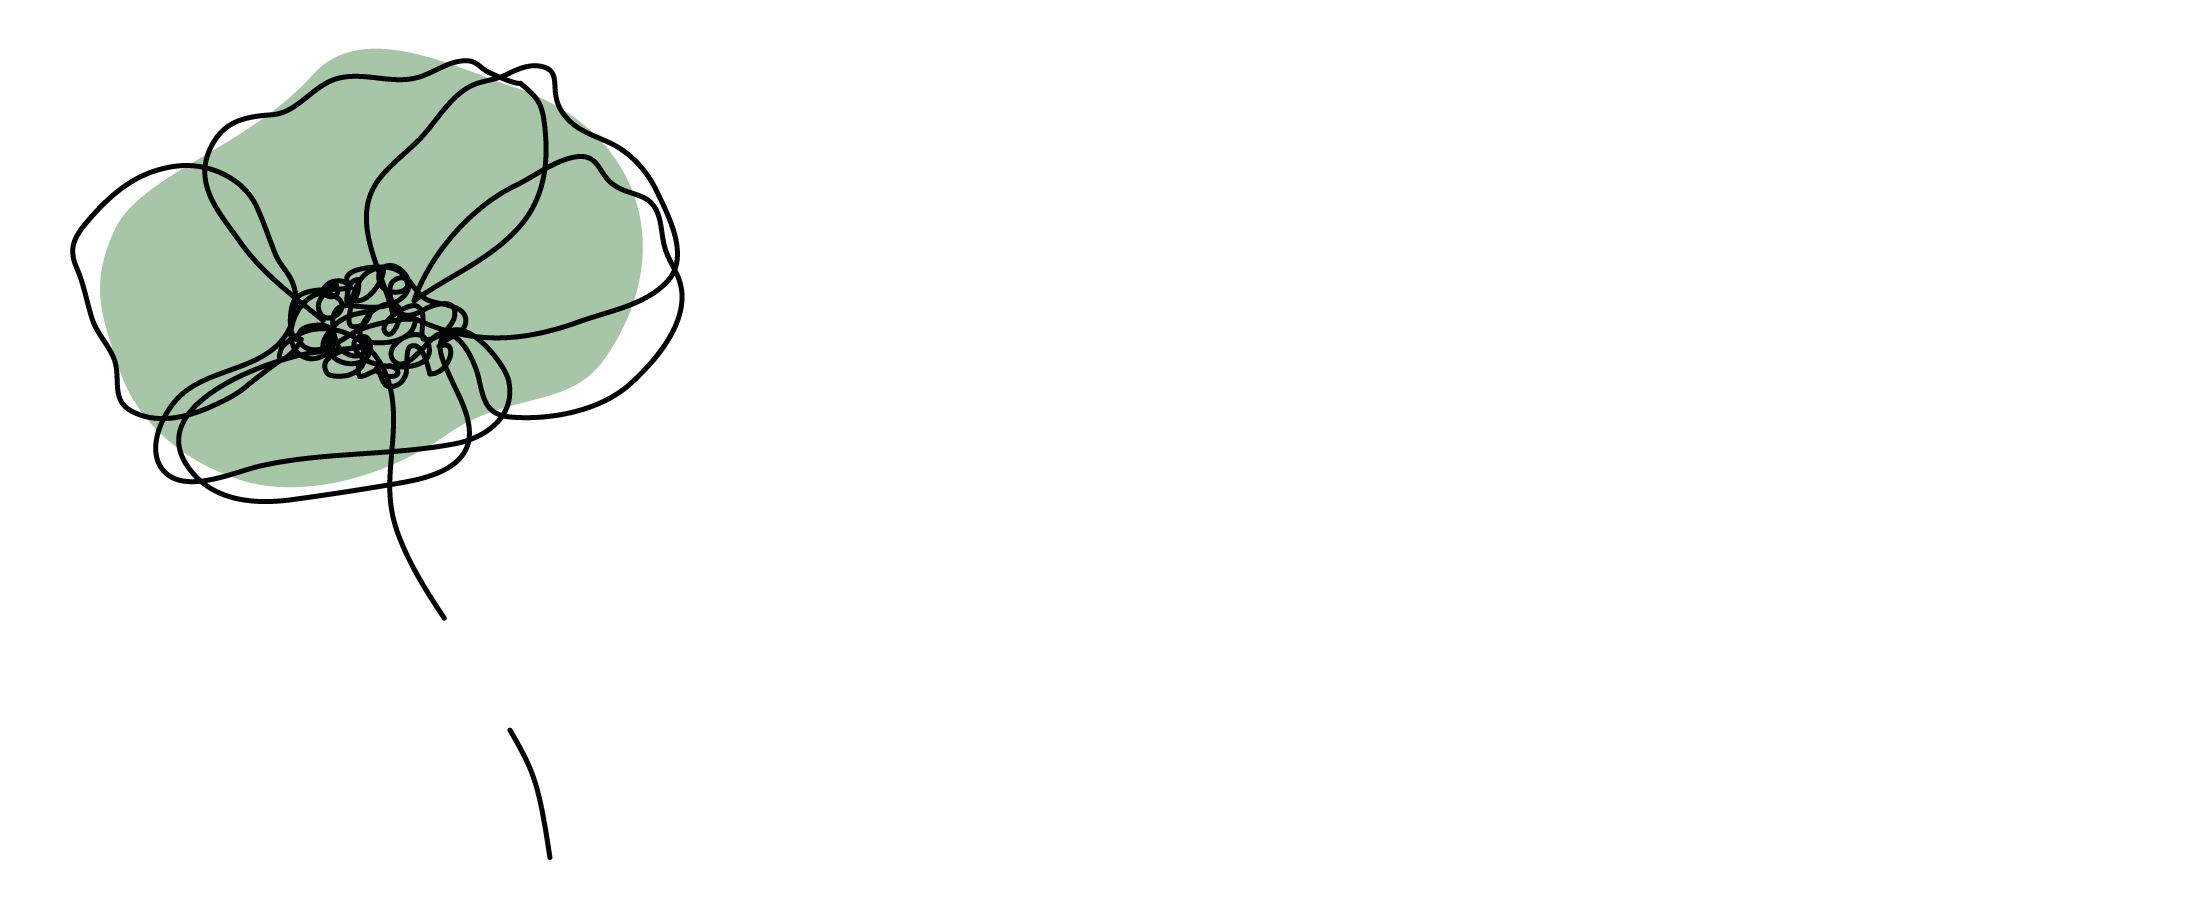 logo nalatenschapspraktijk Heerenveen